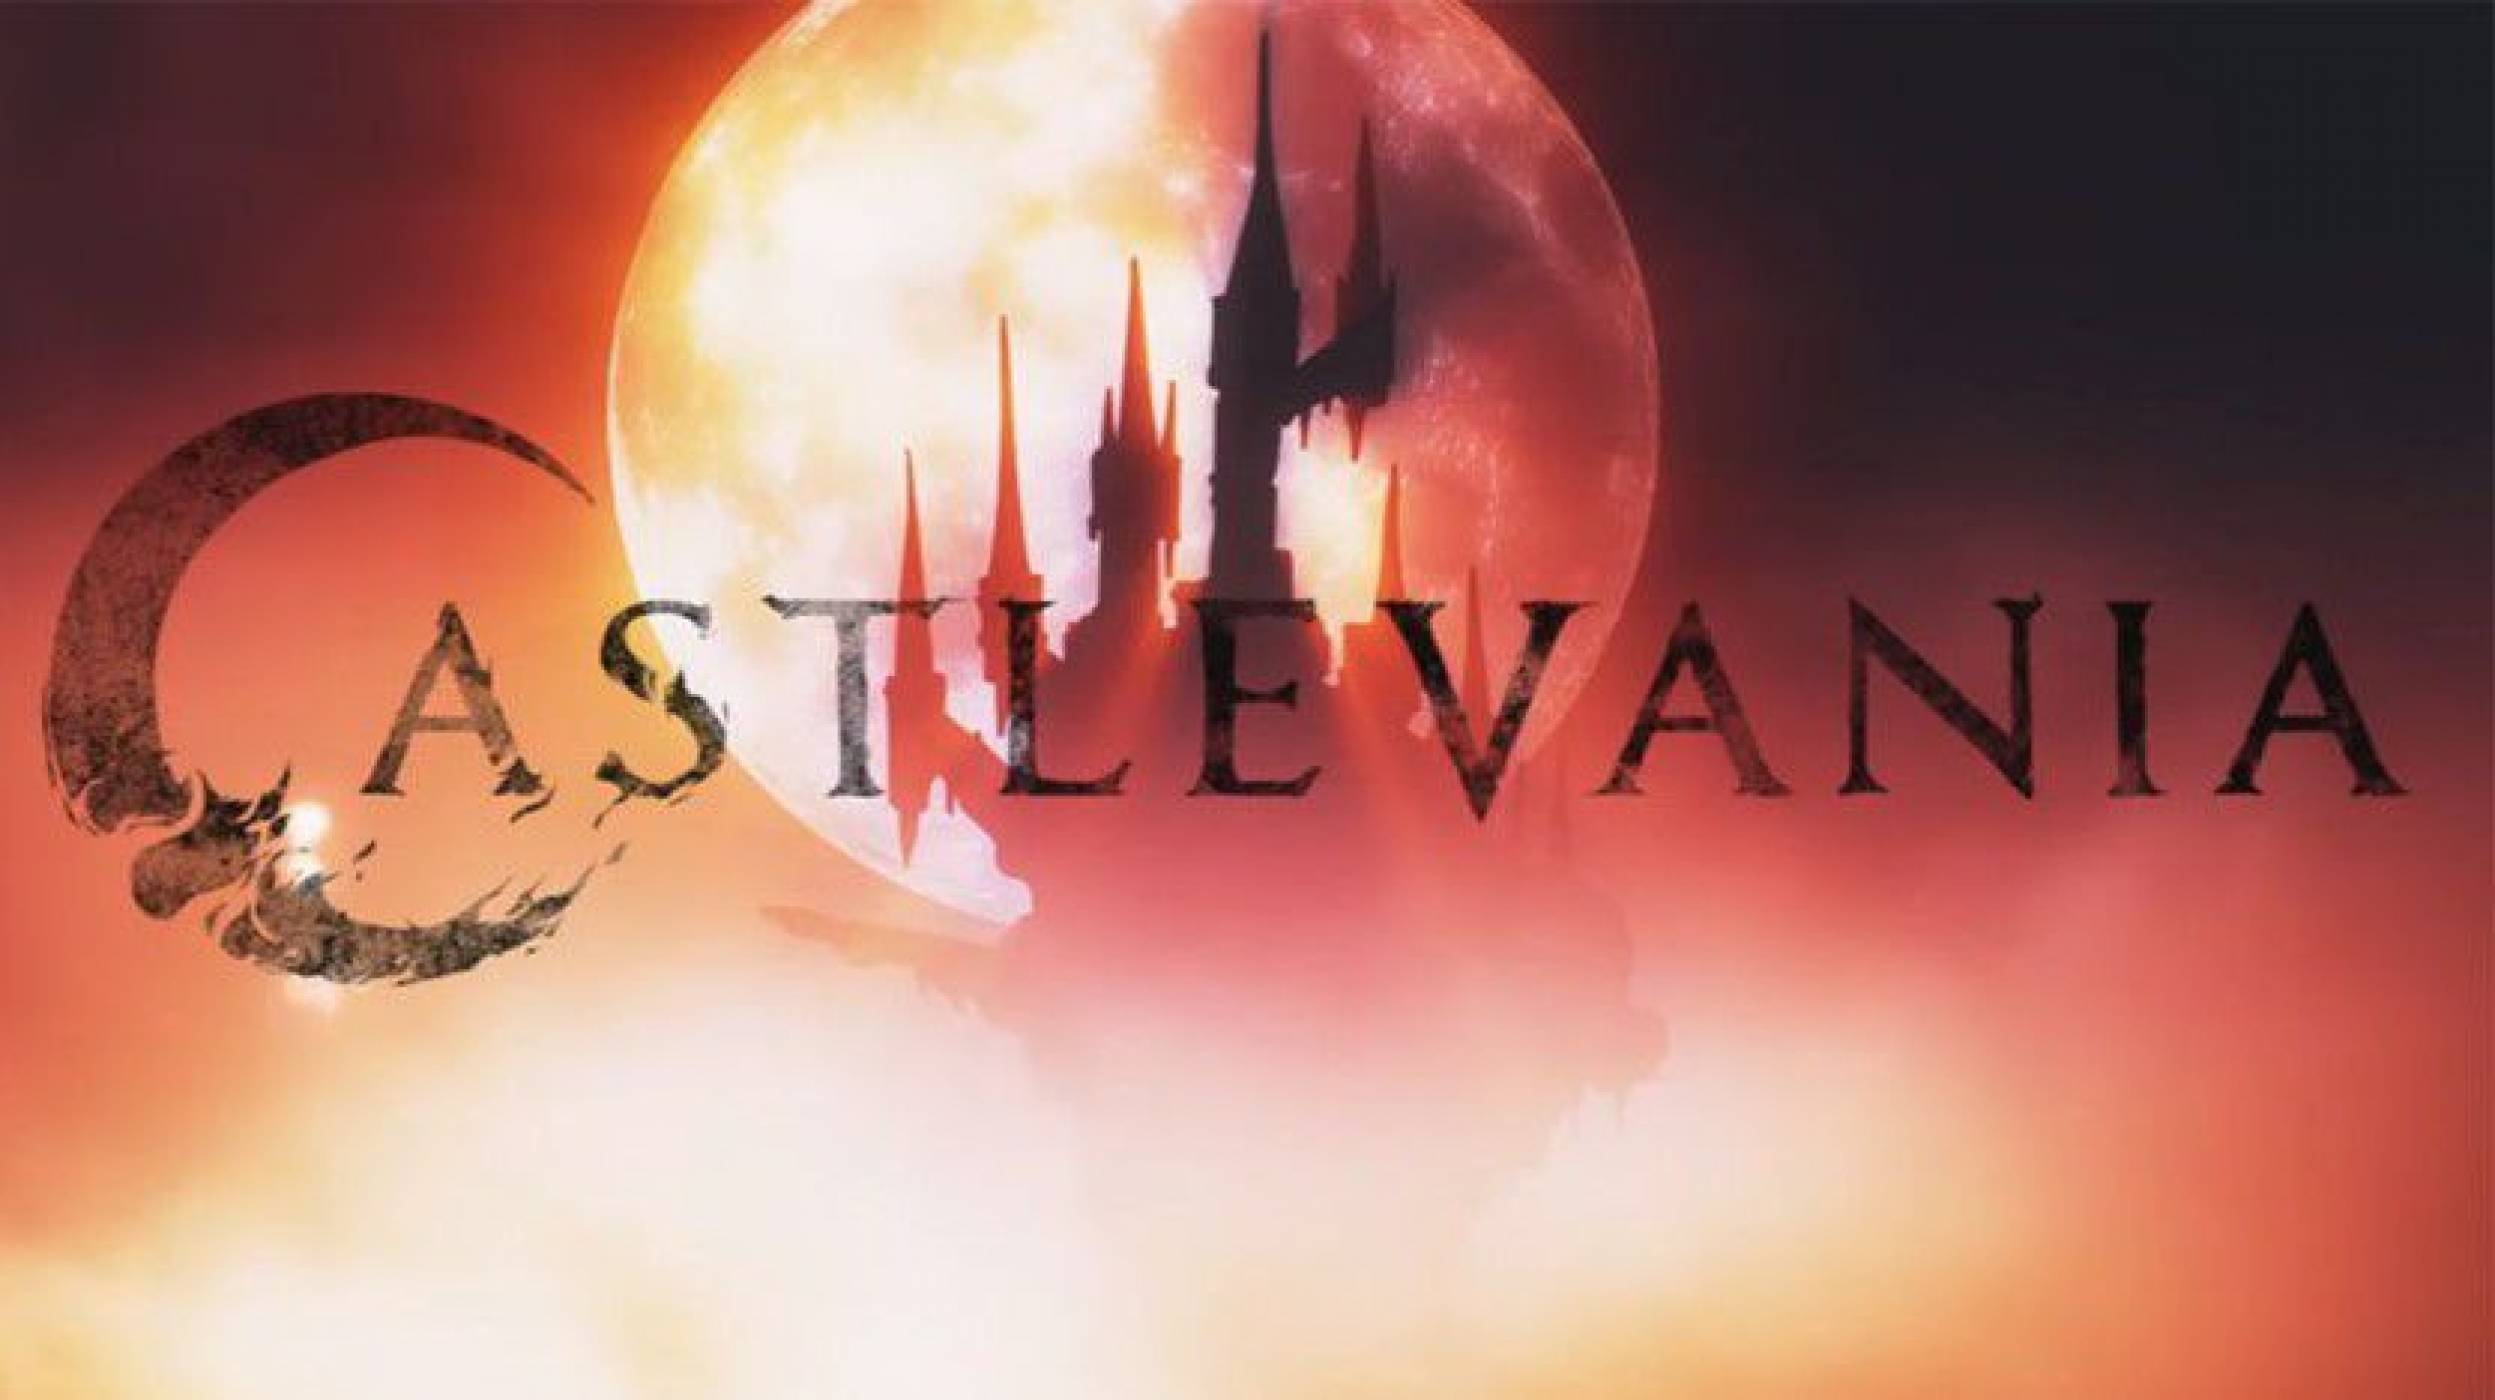 Castlevania тръгва по Netflix от 7 юли, вижте този разкошен трейлър